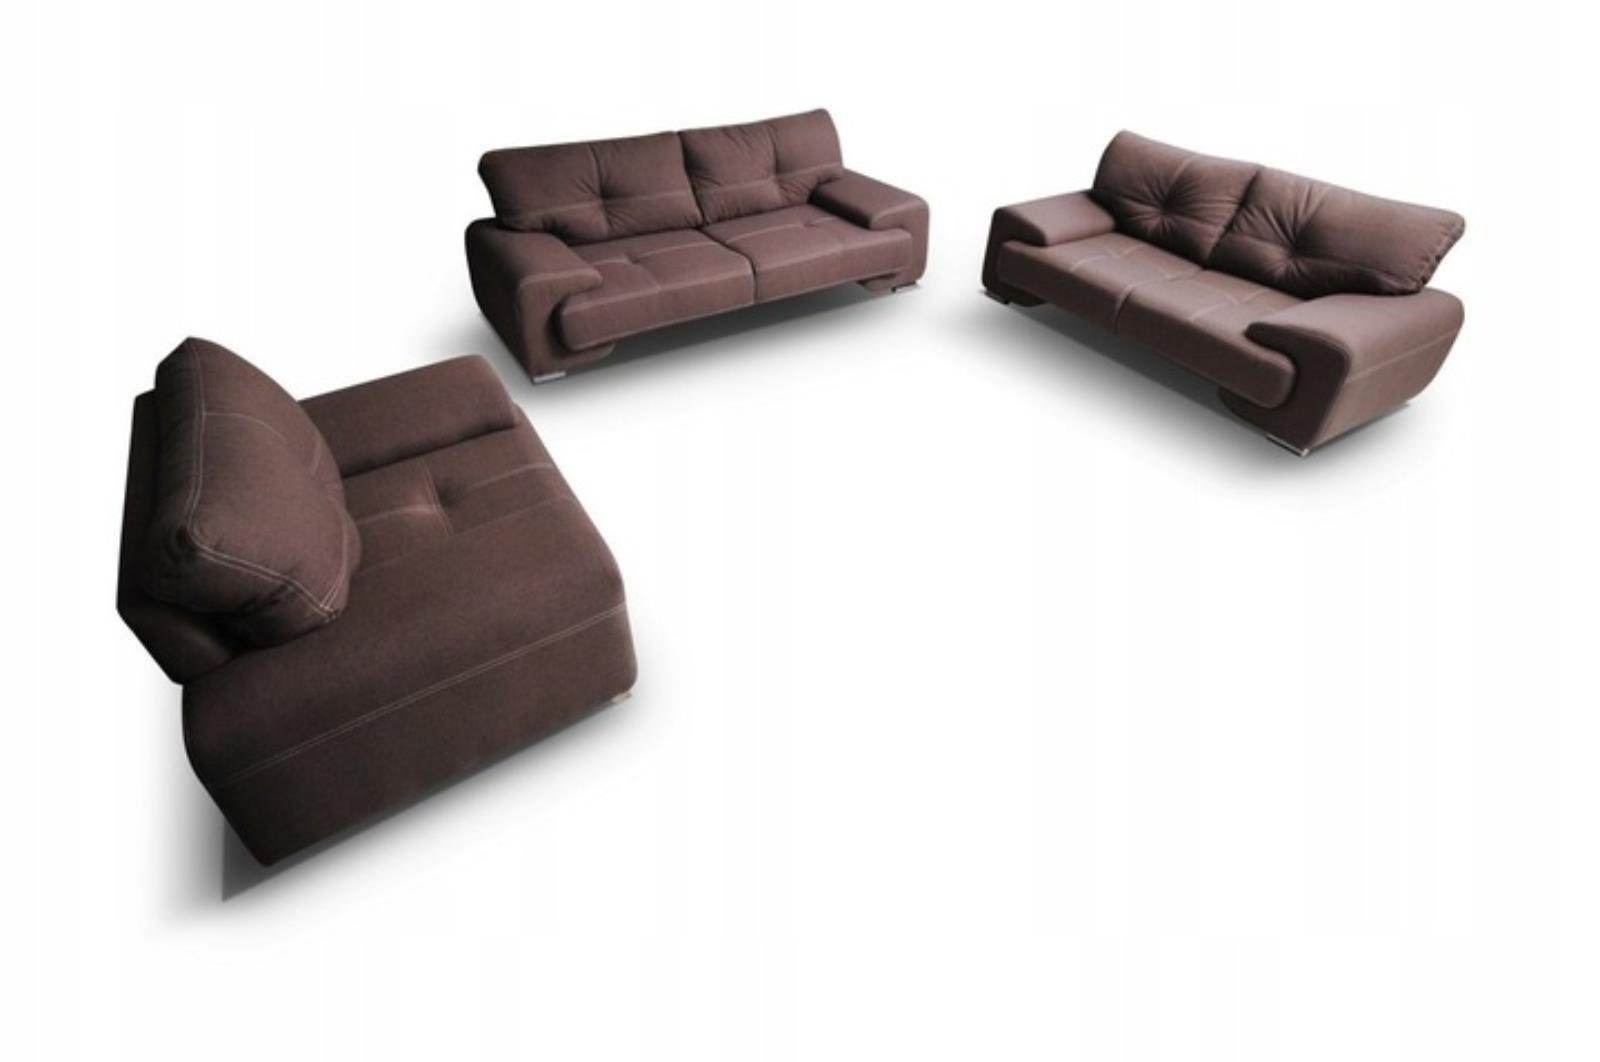 Beautysofa Polstergarnitur NEMO, (Sessel + Zweisitzer + sofa, Couchgarnitur 135 / 190 / 230 cm), inklusive Wellenunterfederung, bequemer Sitz, Chrombeine Braun